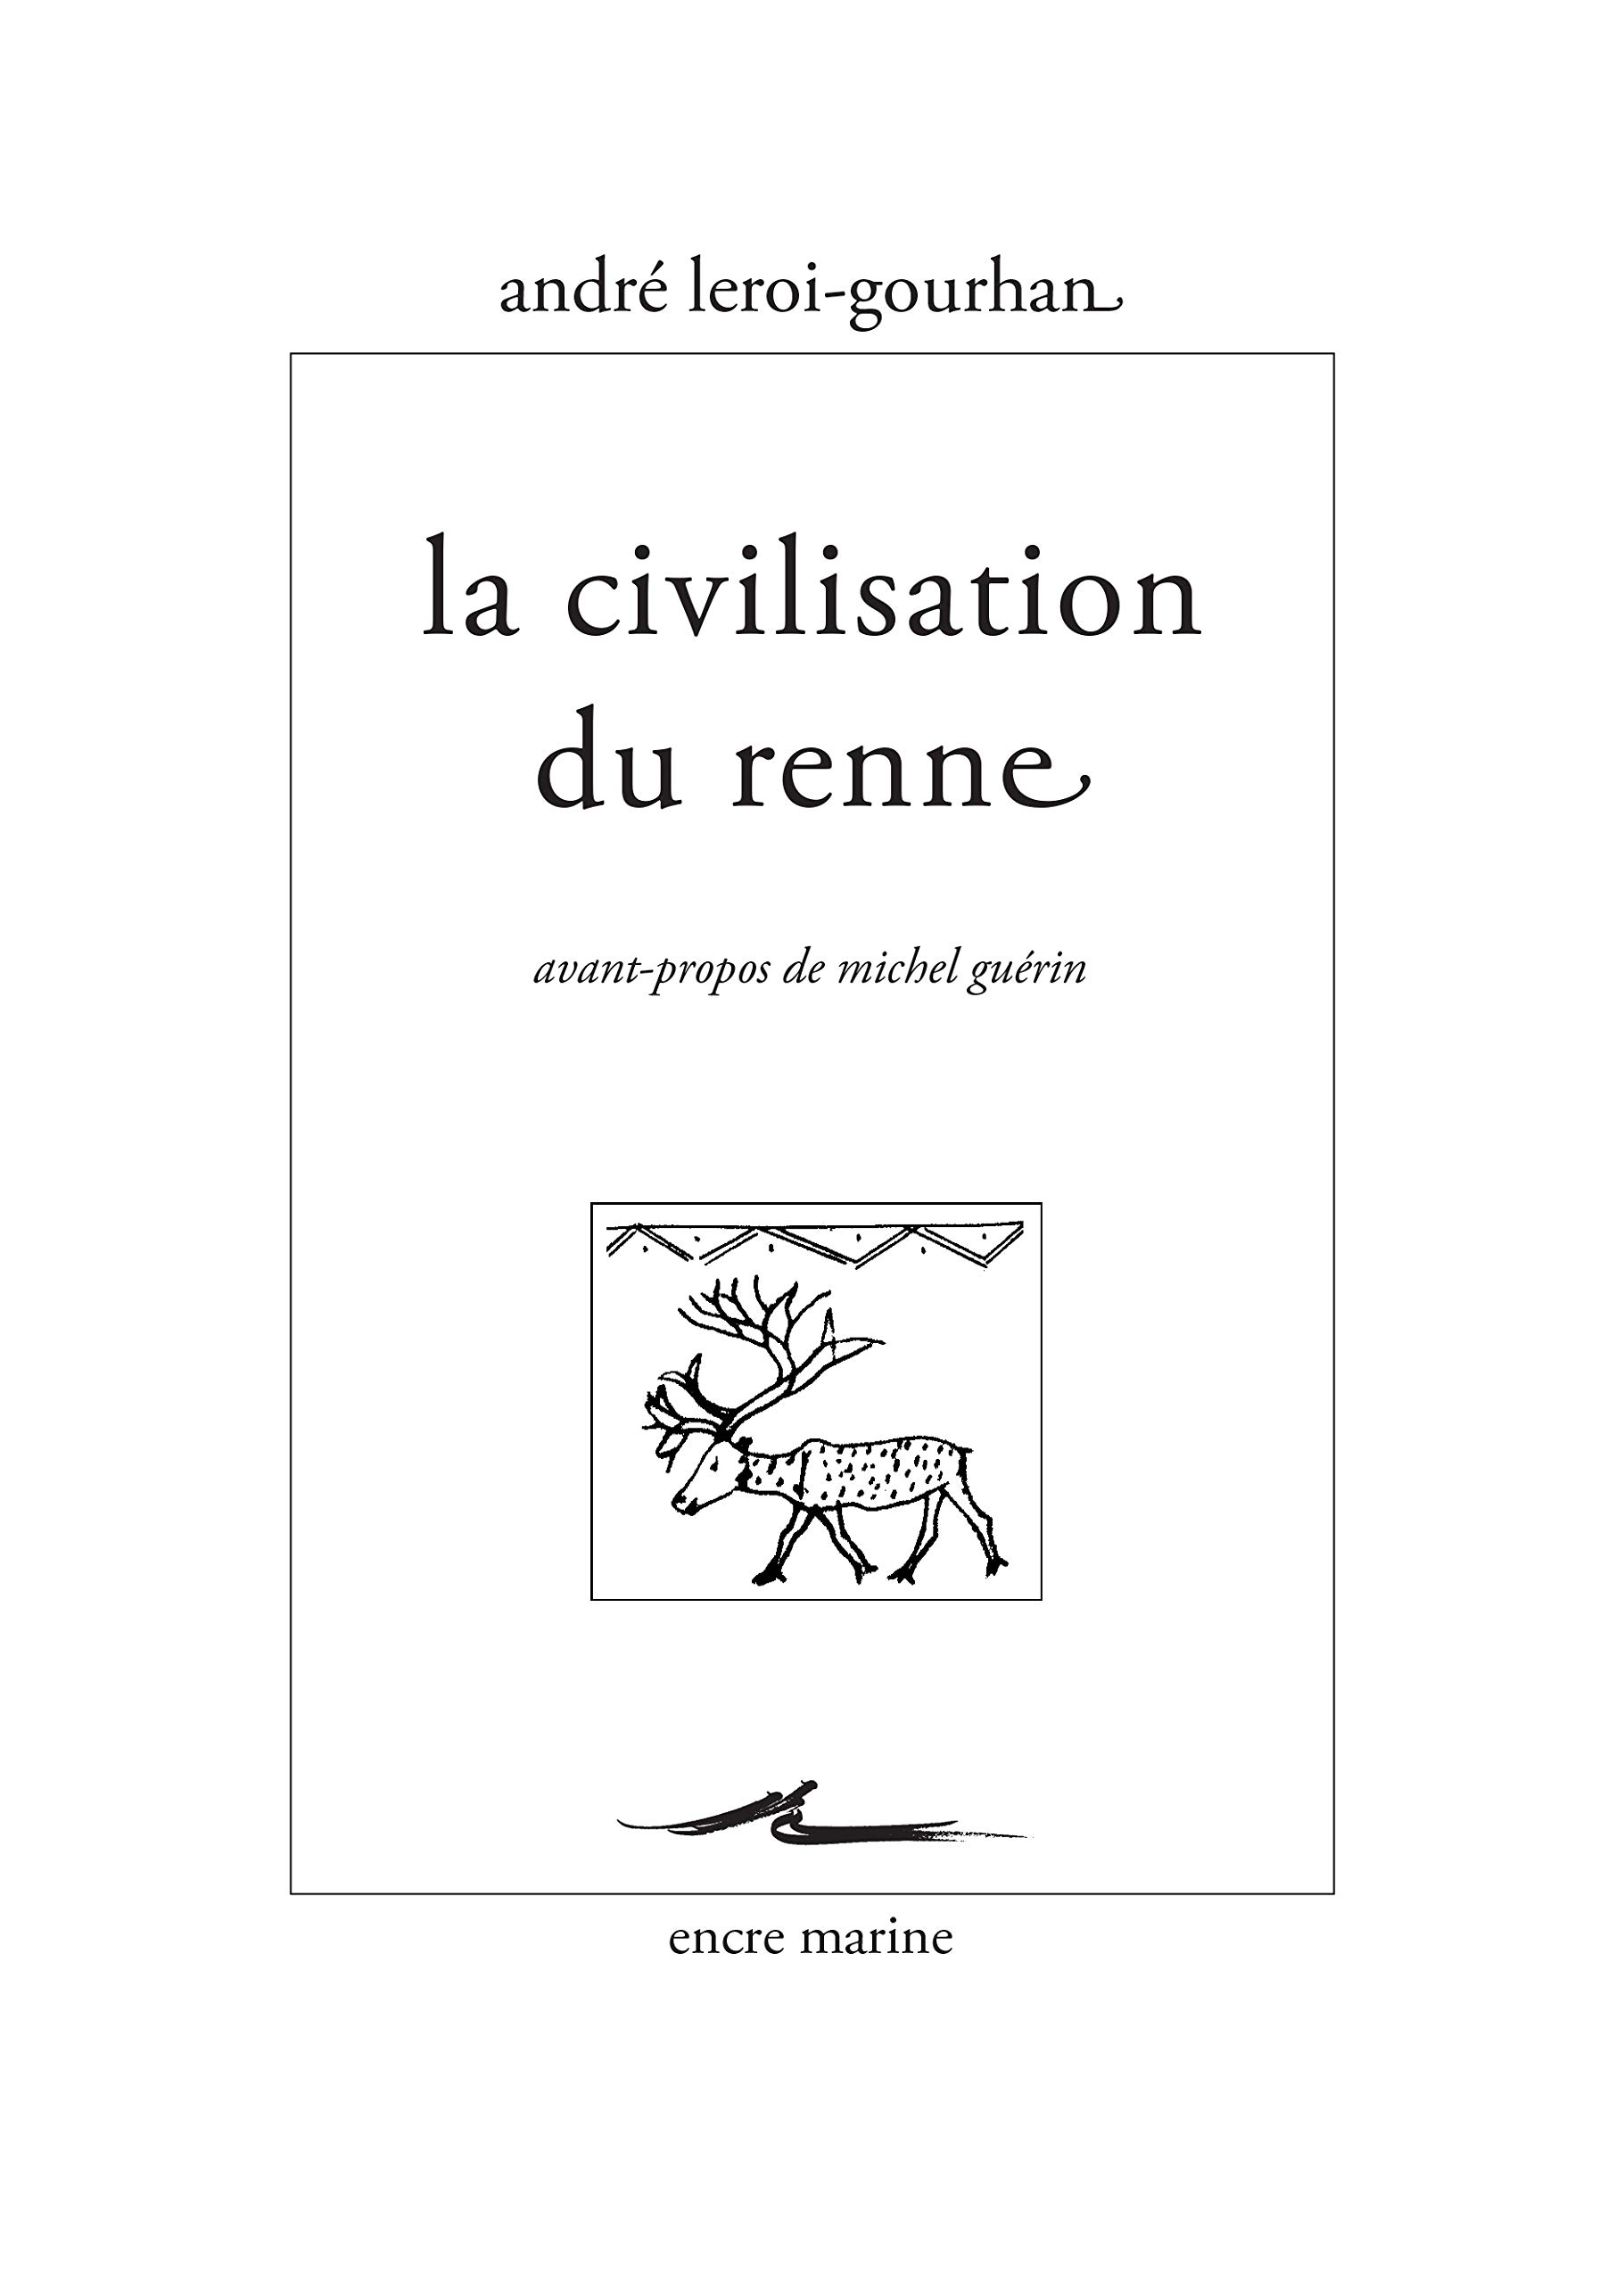 La civilisation du renne, 2019, 224 p.